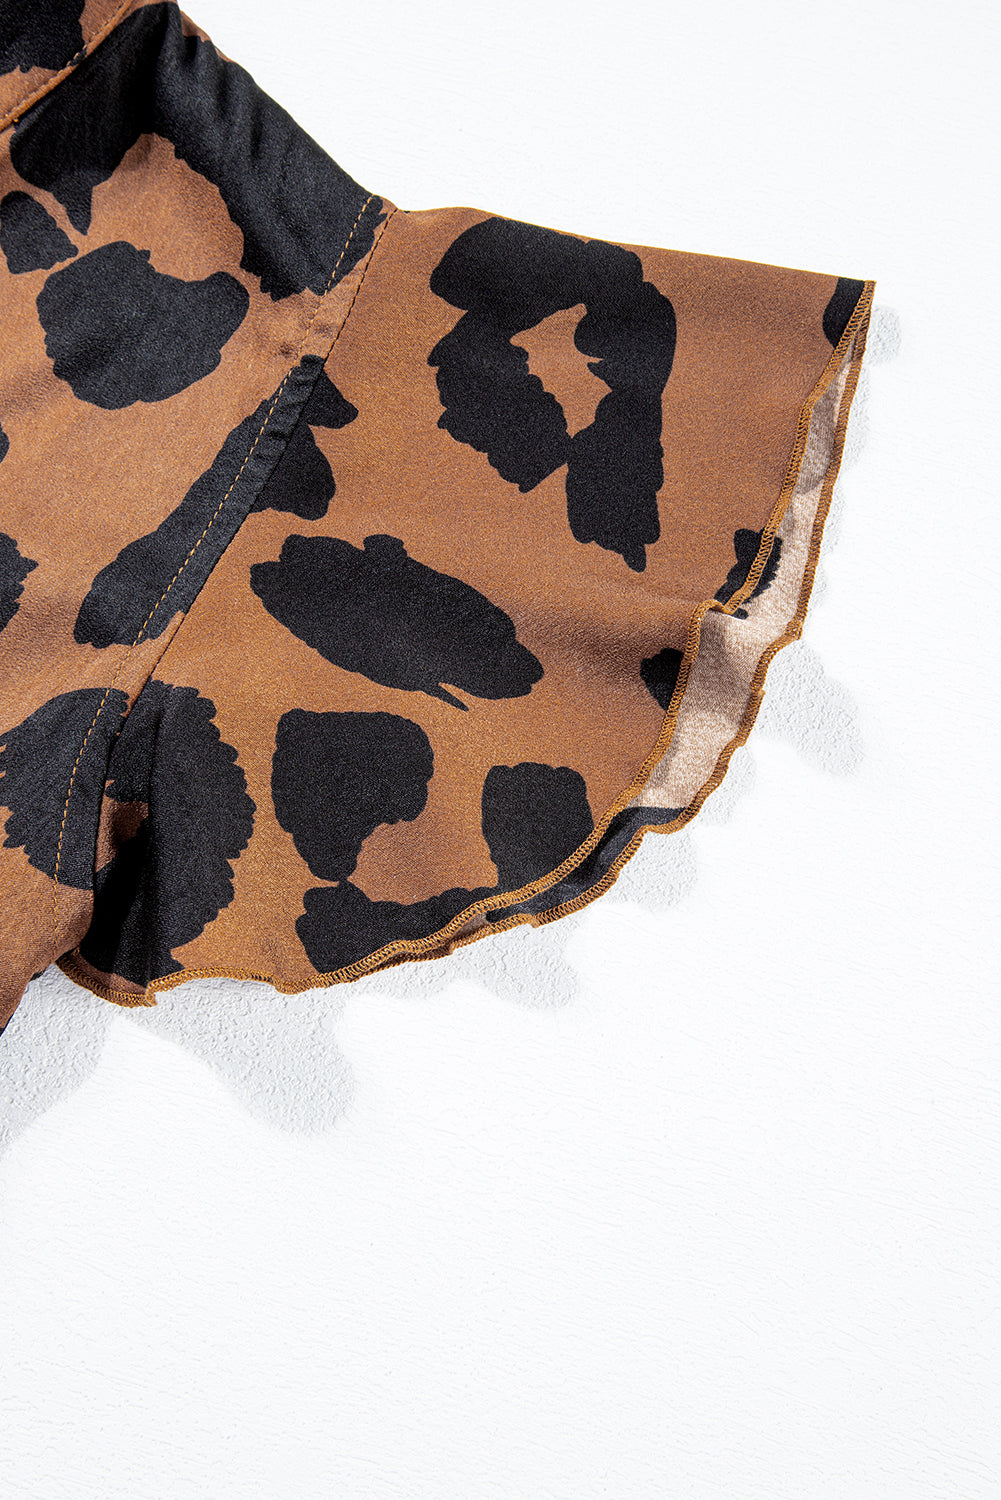 Brown and Black Leopard Print Flutter Sleeve Split Neck Blouse